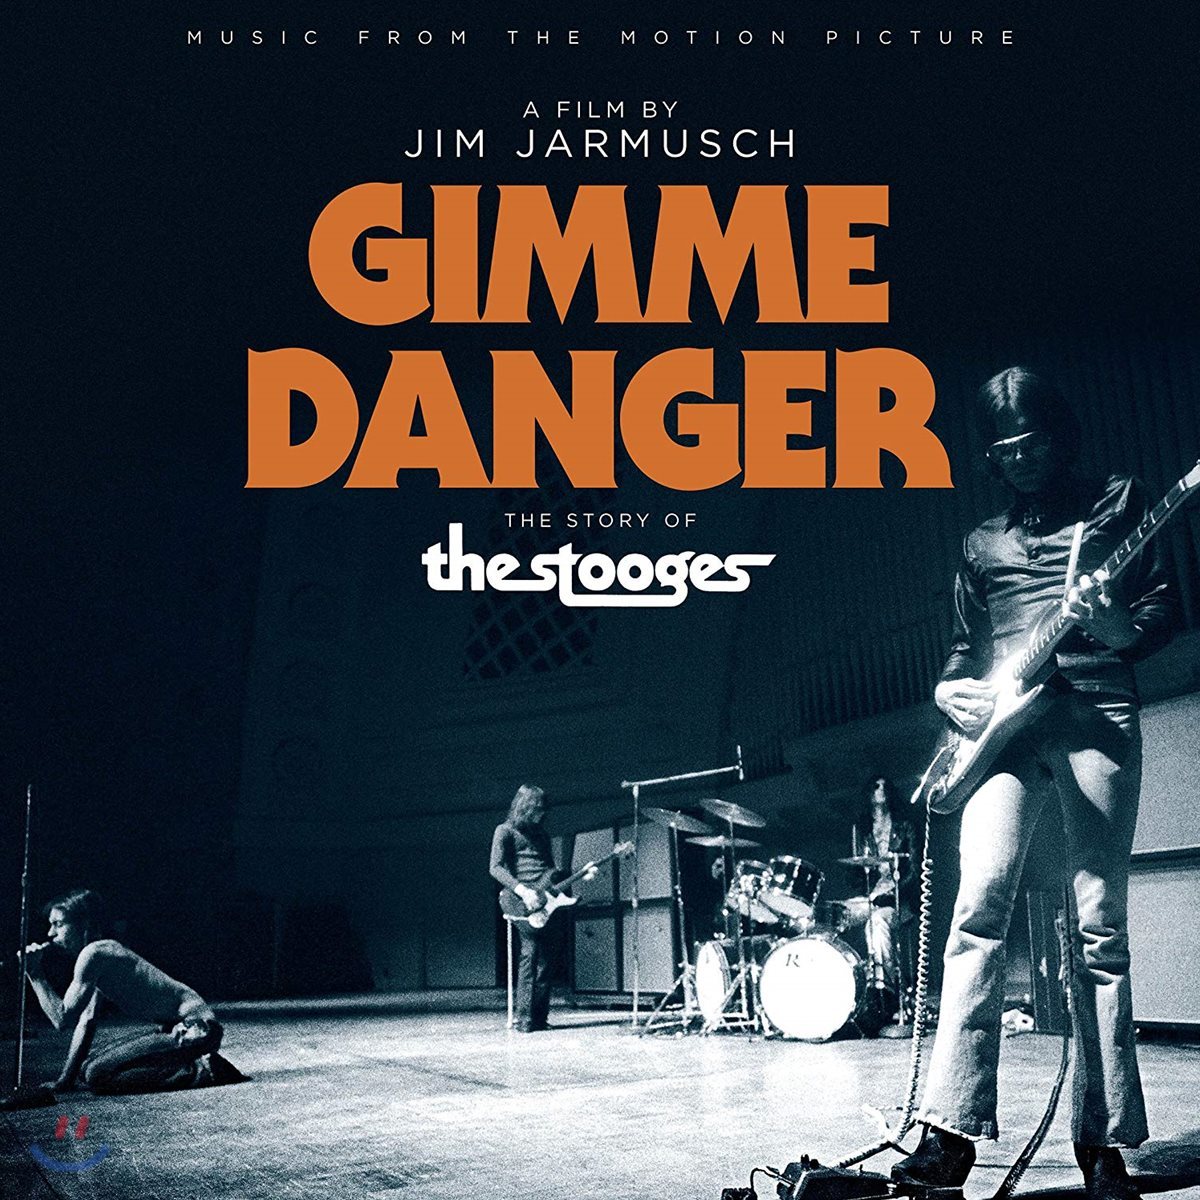 짐 자무쉬 감독의 다큐멘터리 '김미 데인저: 스투지스 스토리' 음악 (Jim Jarmusch 'Gimme Danger: The Story of The Stooges' OST)